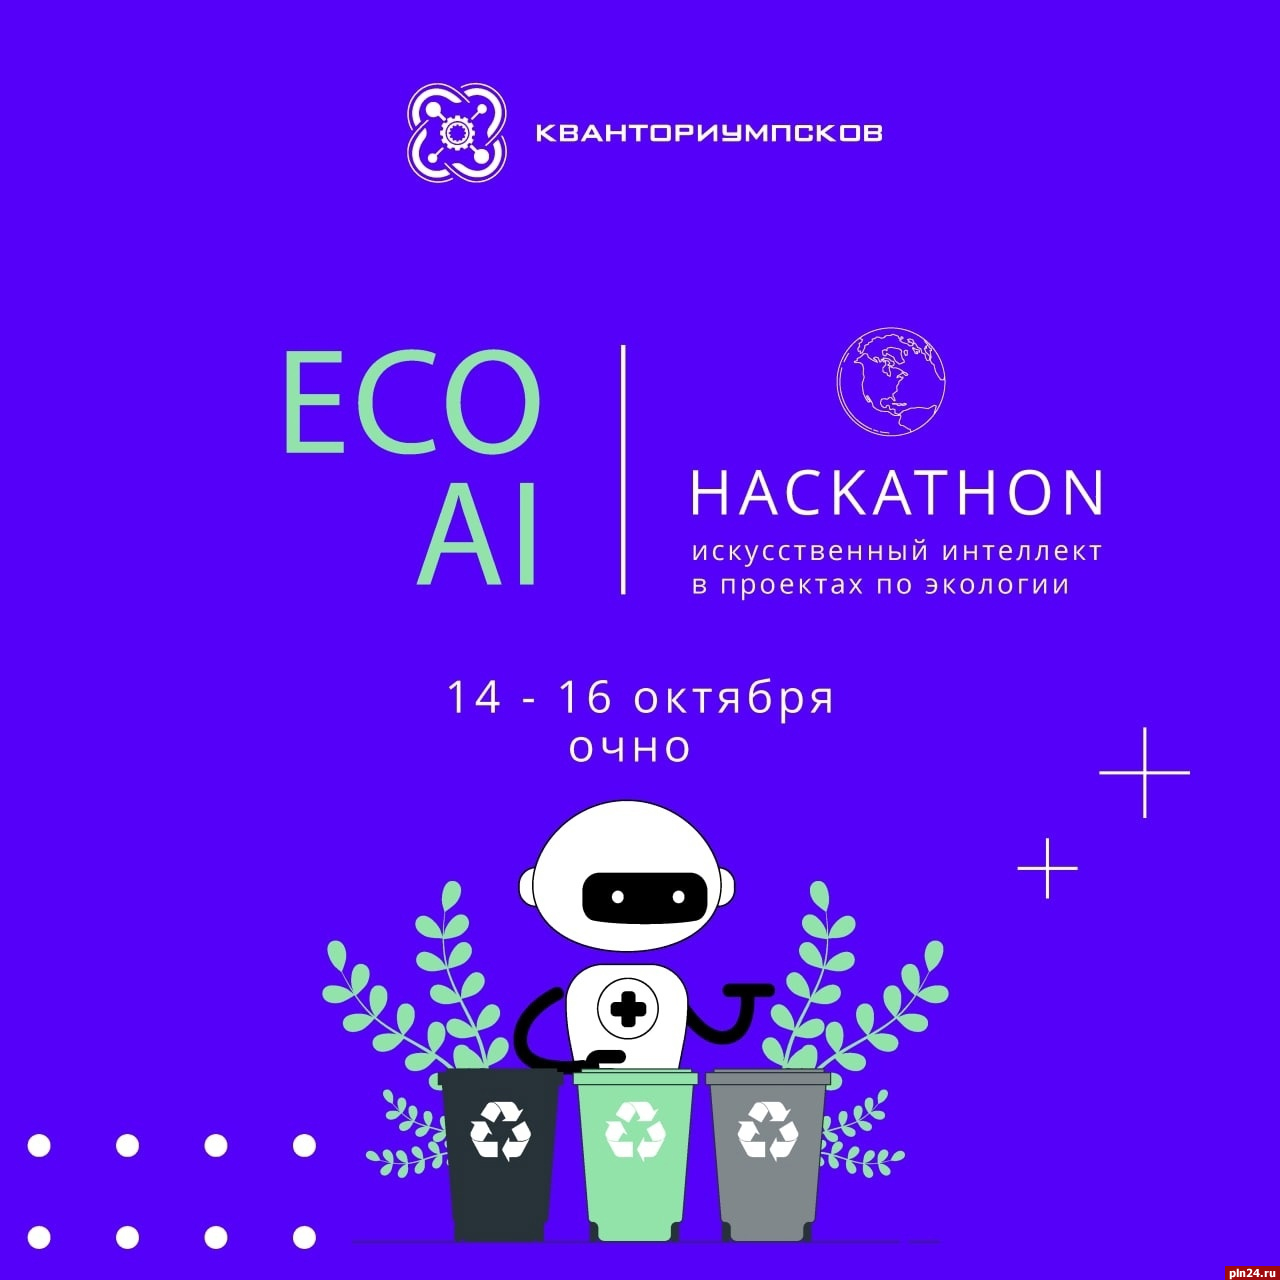 Конкурс среди детей-разработчиков в сфере экологии и искусственного интеллекта пройдёт в Пскове